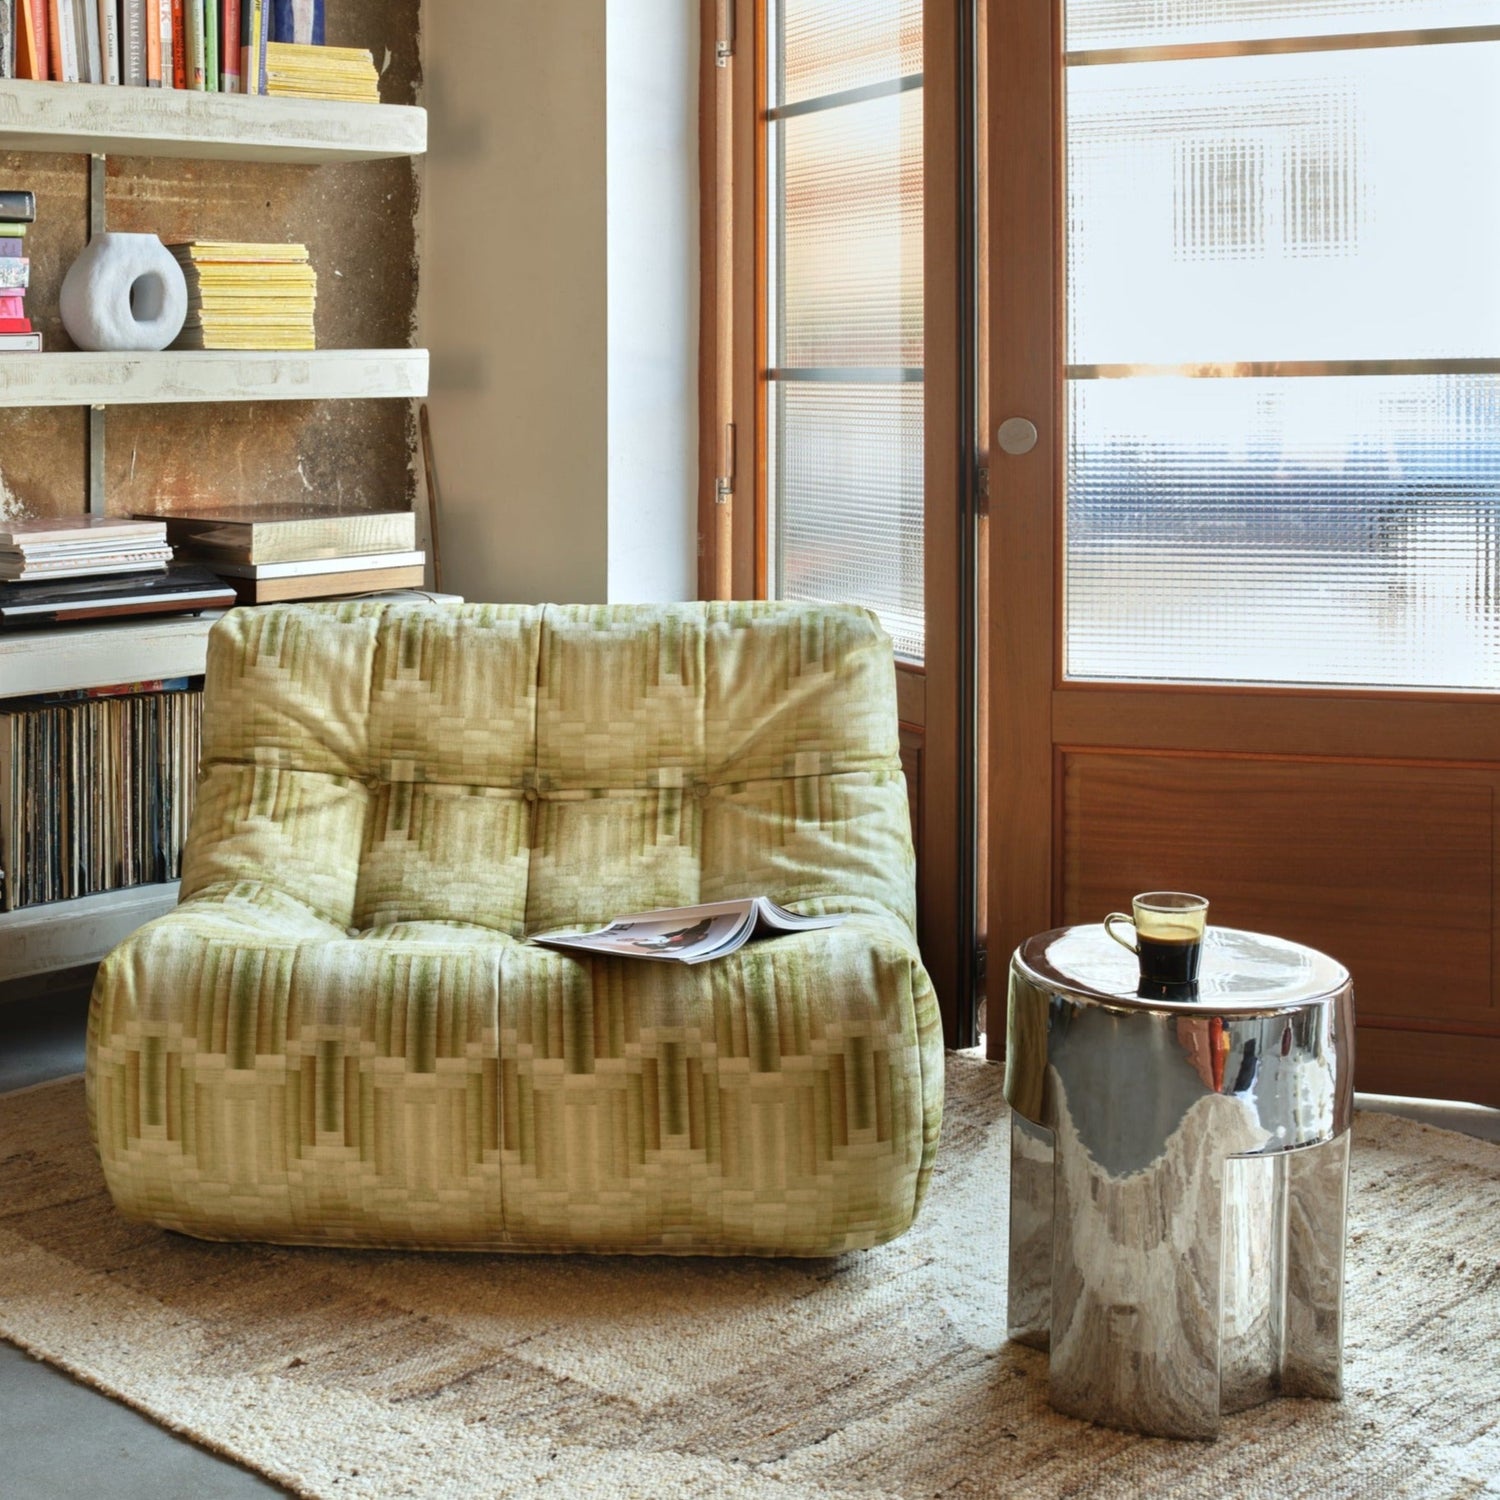 Lenestolen Lazy Lounge Chair fra HK Living er romslig og veldig god å sitte i, i tillegg til at den er utrolig lett og dermed enkelt kan flyttes rundt etter behov. Bruk den til å lounge i stuen i en sofasone, skap deg en digg lesekrok eller ta den med inn på soverommet om du har god plass.